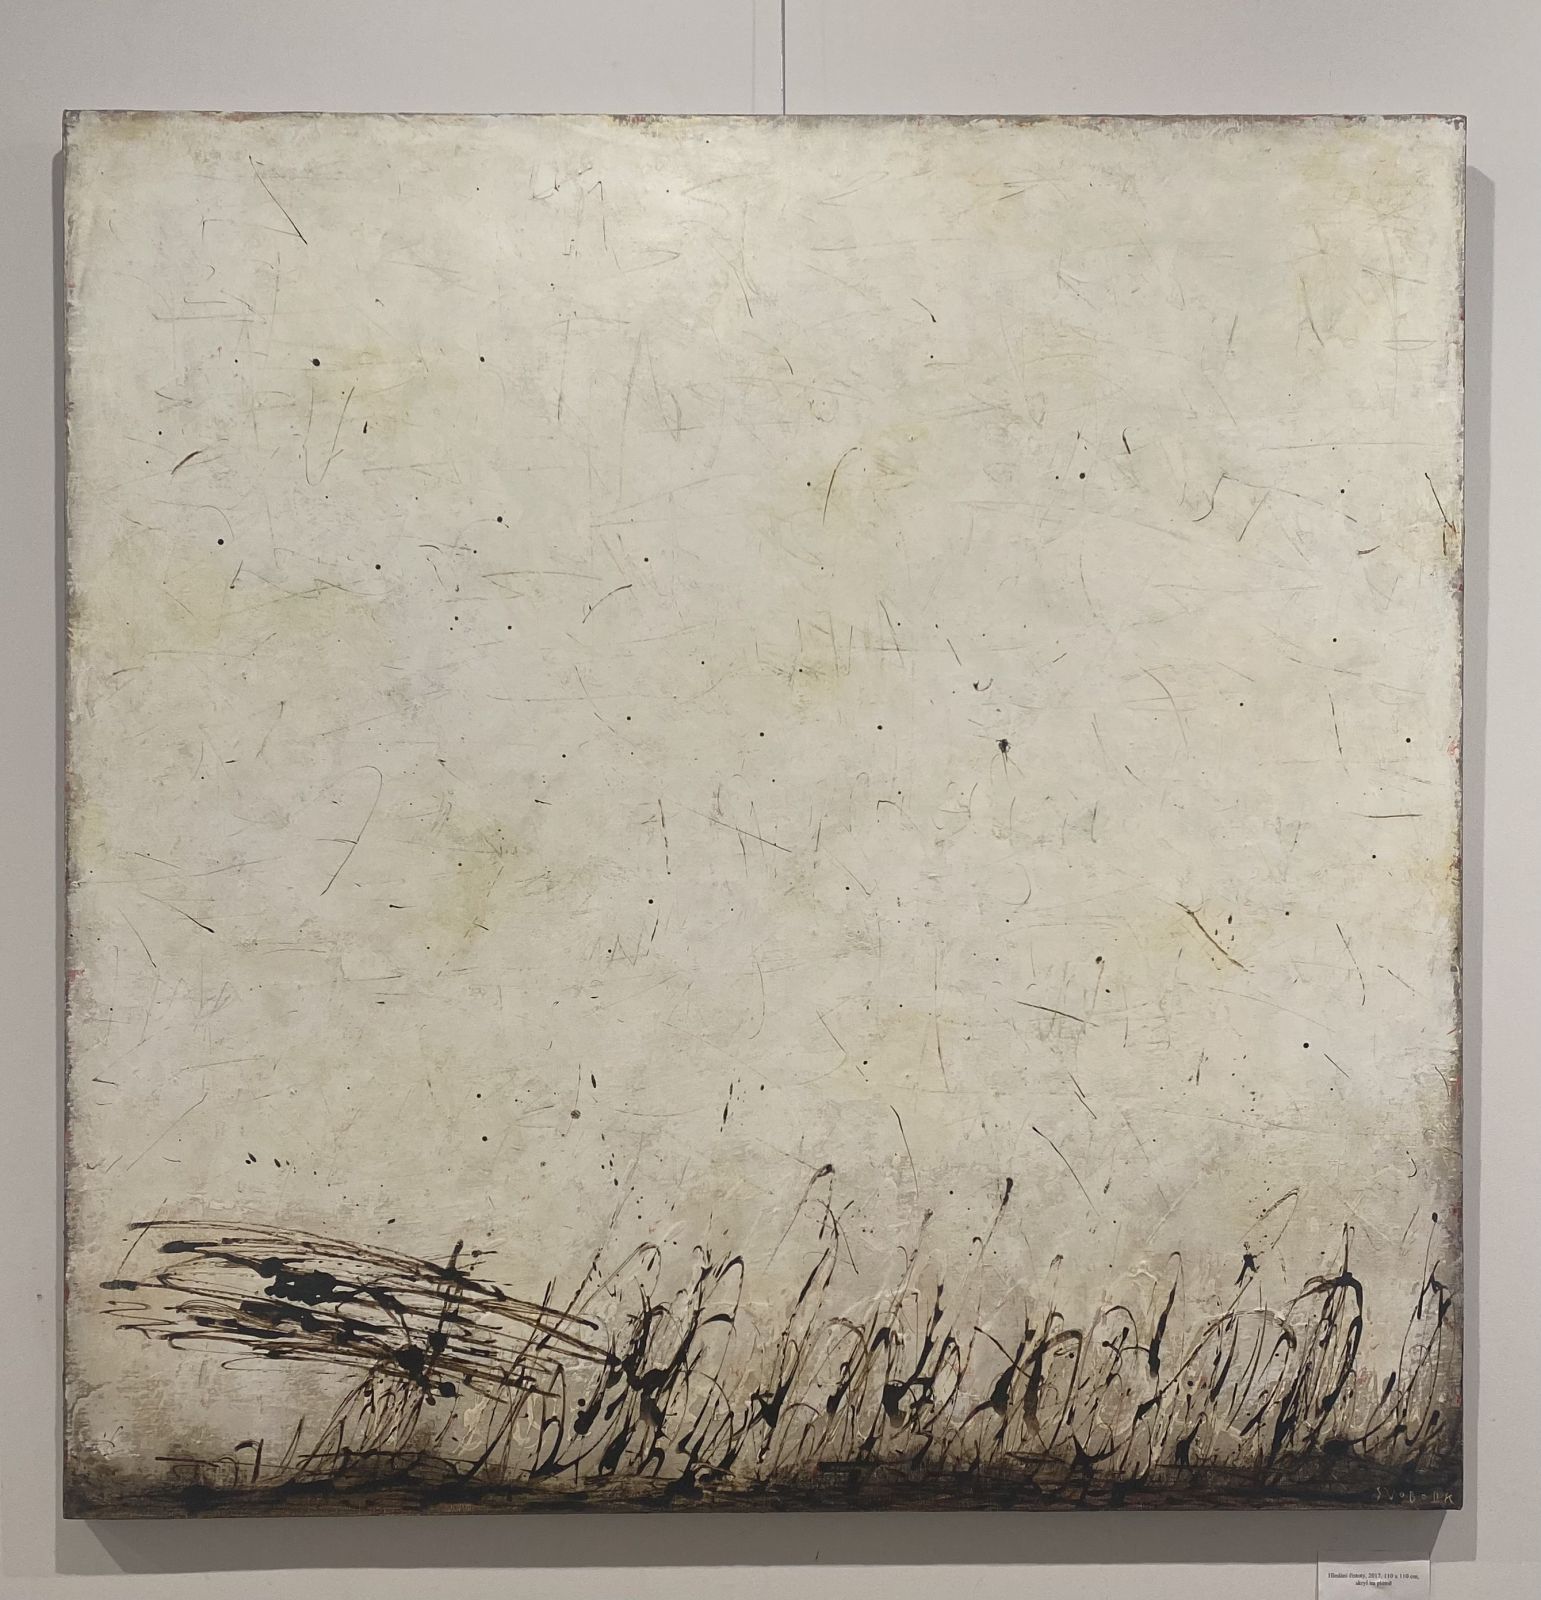 Hledání čistoty, 2017, 110 x 110 cm, akryl na plátně